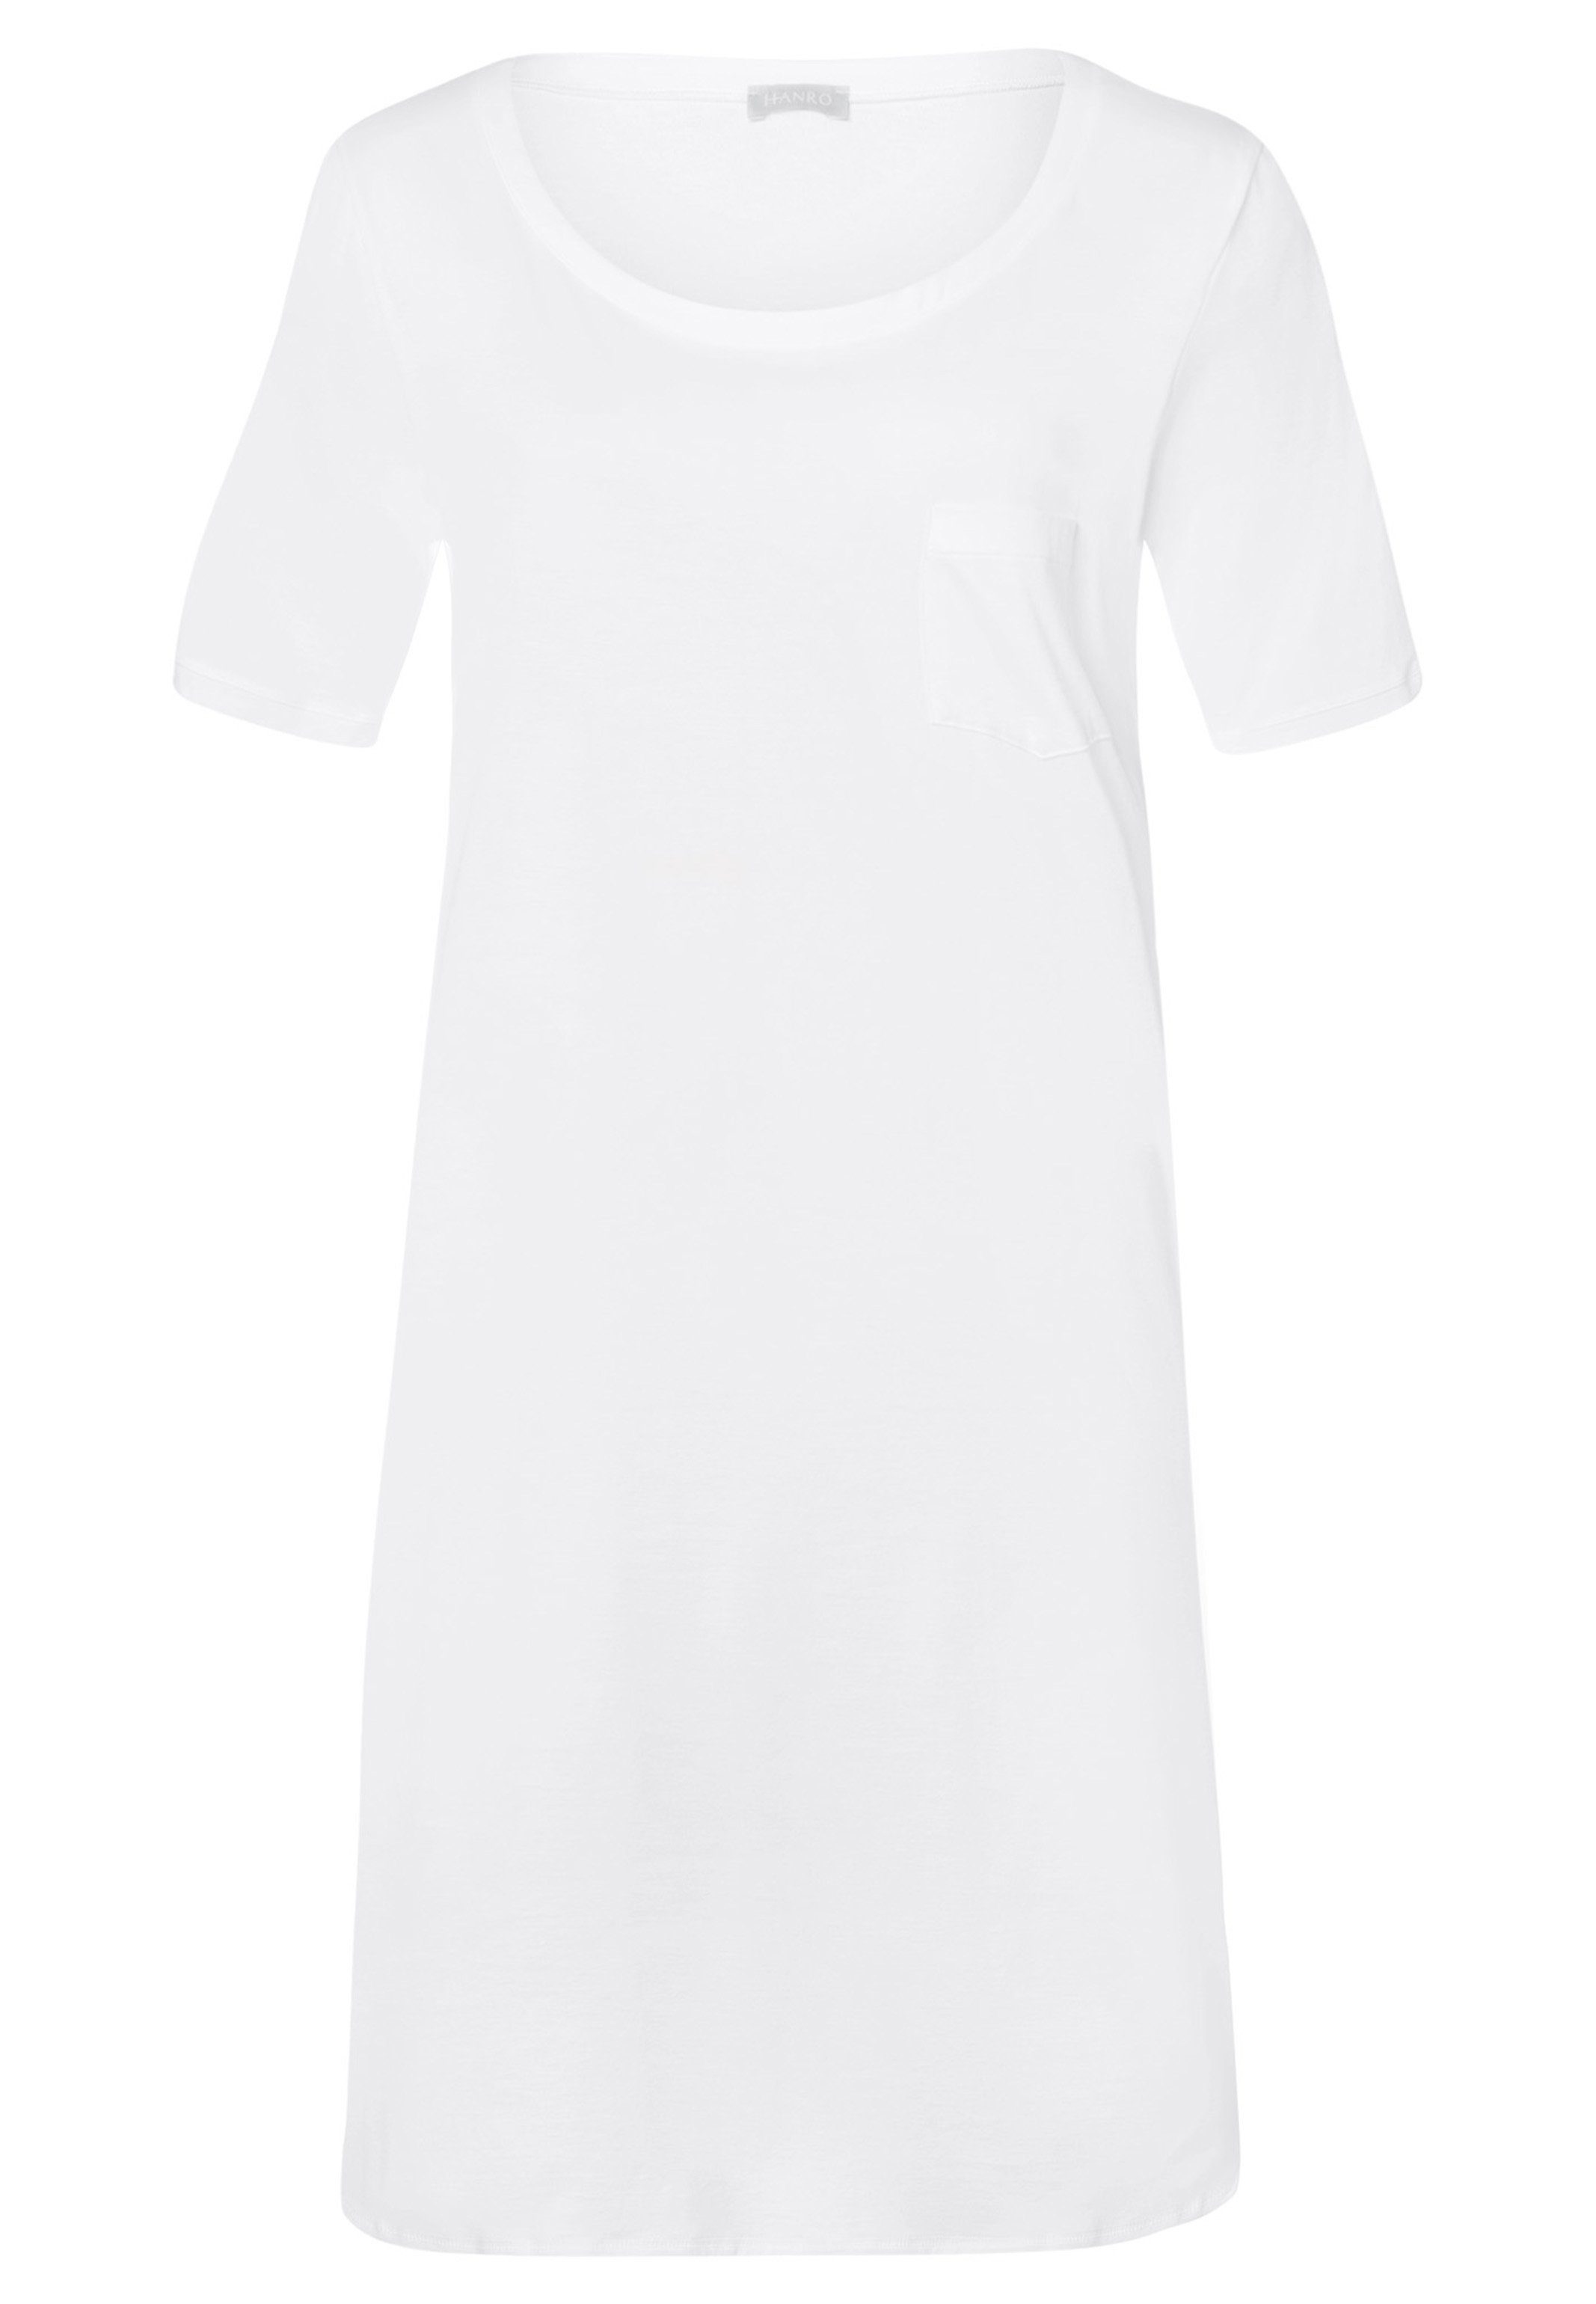 Voile-Blende - Zarte Nachthemd Nachthemd Weiß am - Baumwolle Cotton Hanro Rundhals-Ausschnitt (1-tlg) Deluxe